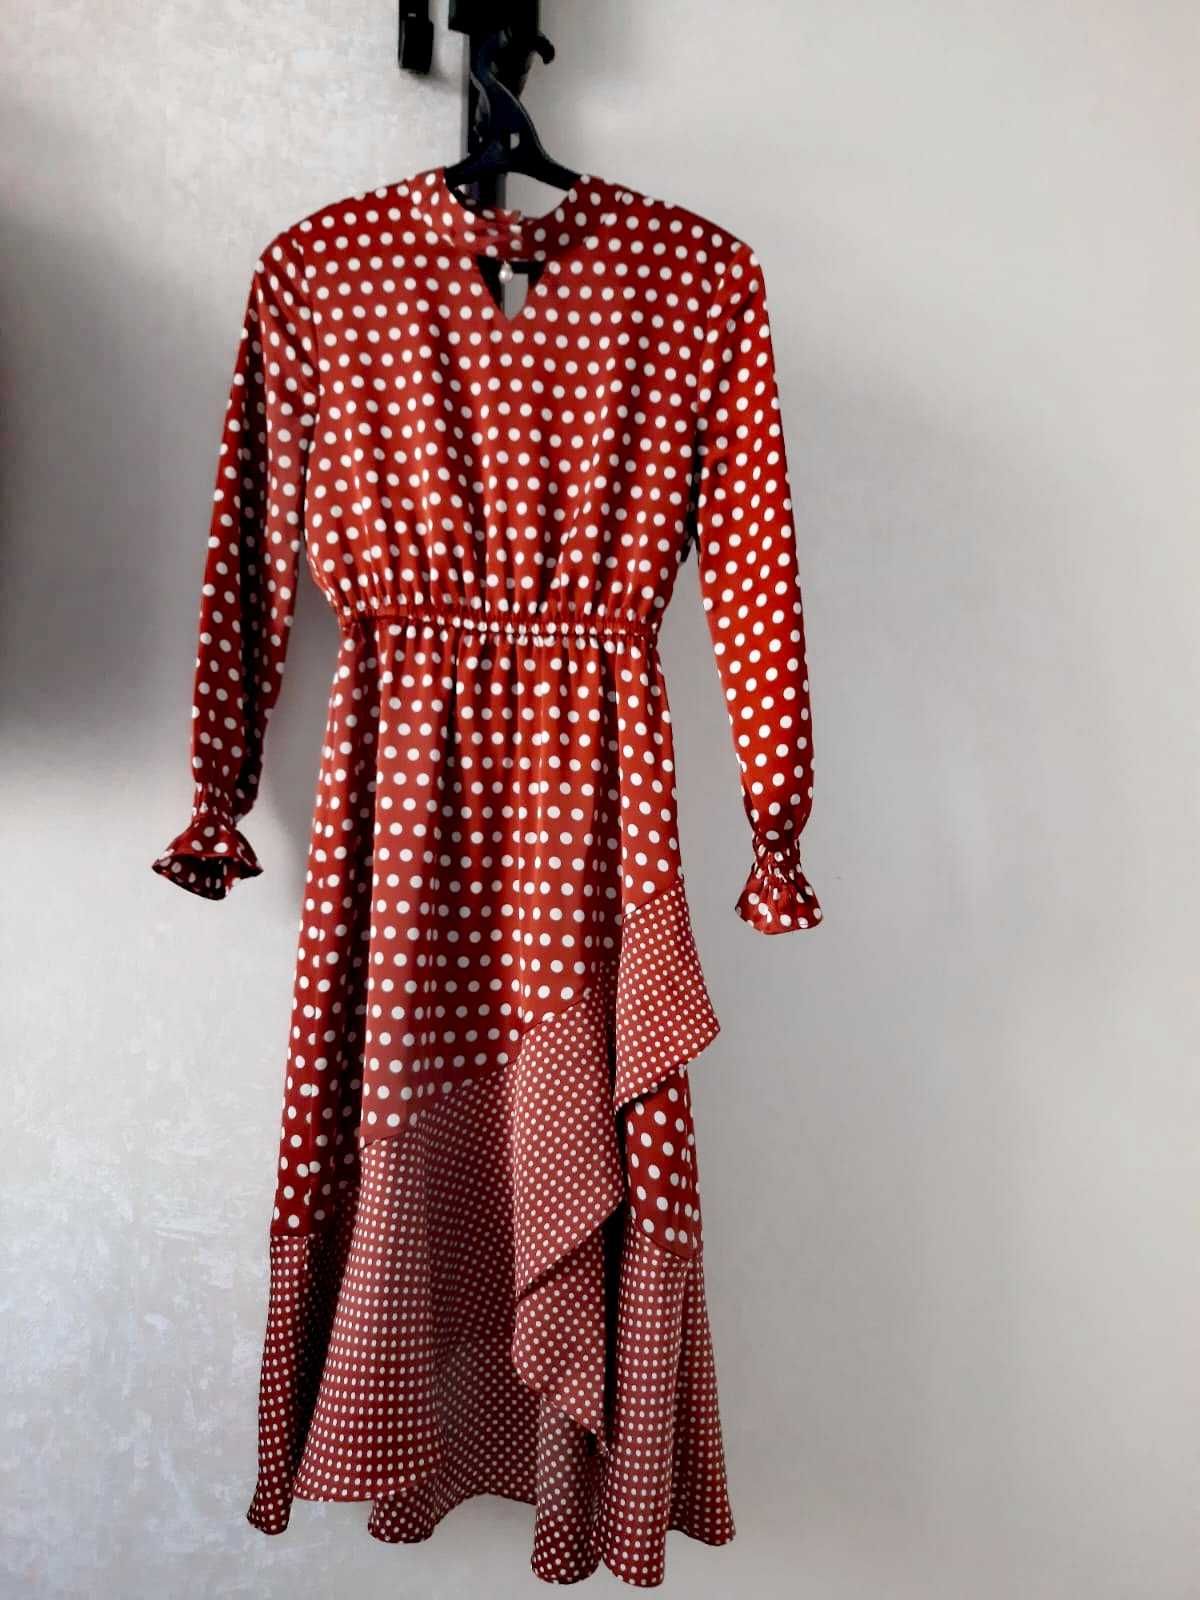 Цена снижена! Новое платье в горошек на запах, 42-46, Корея